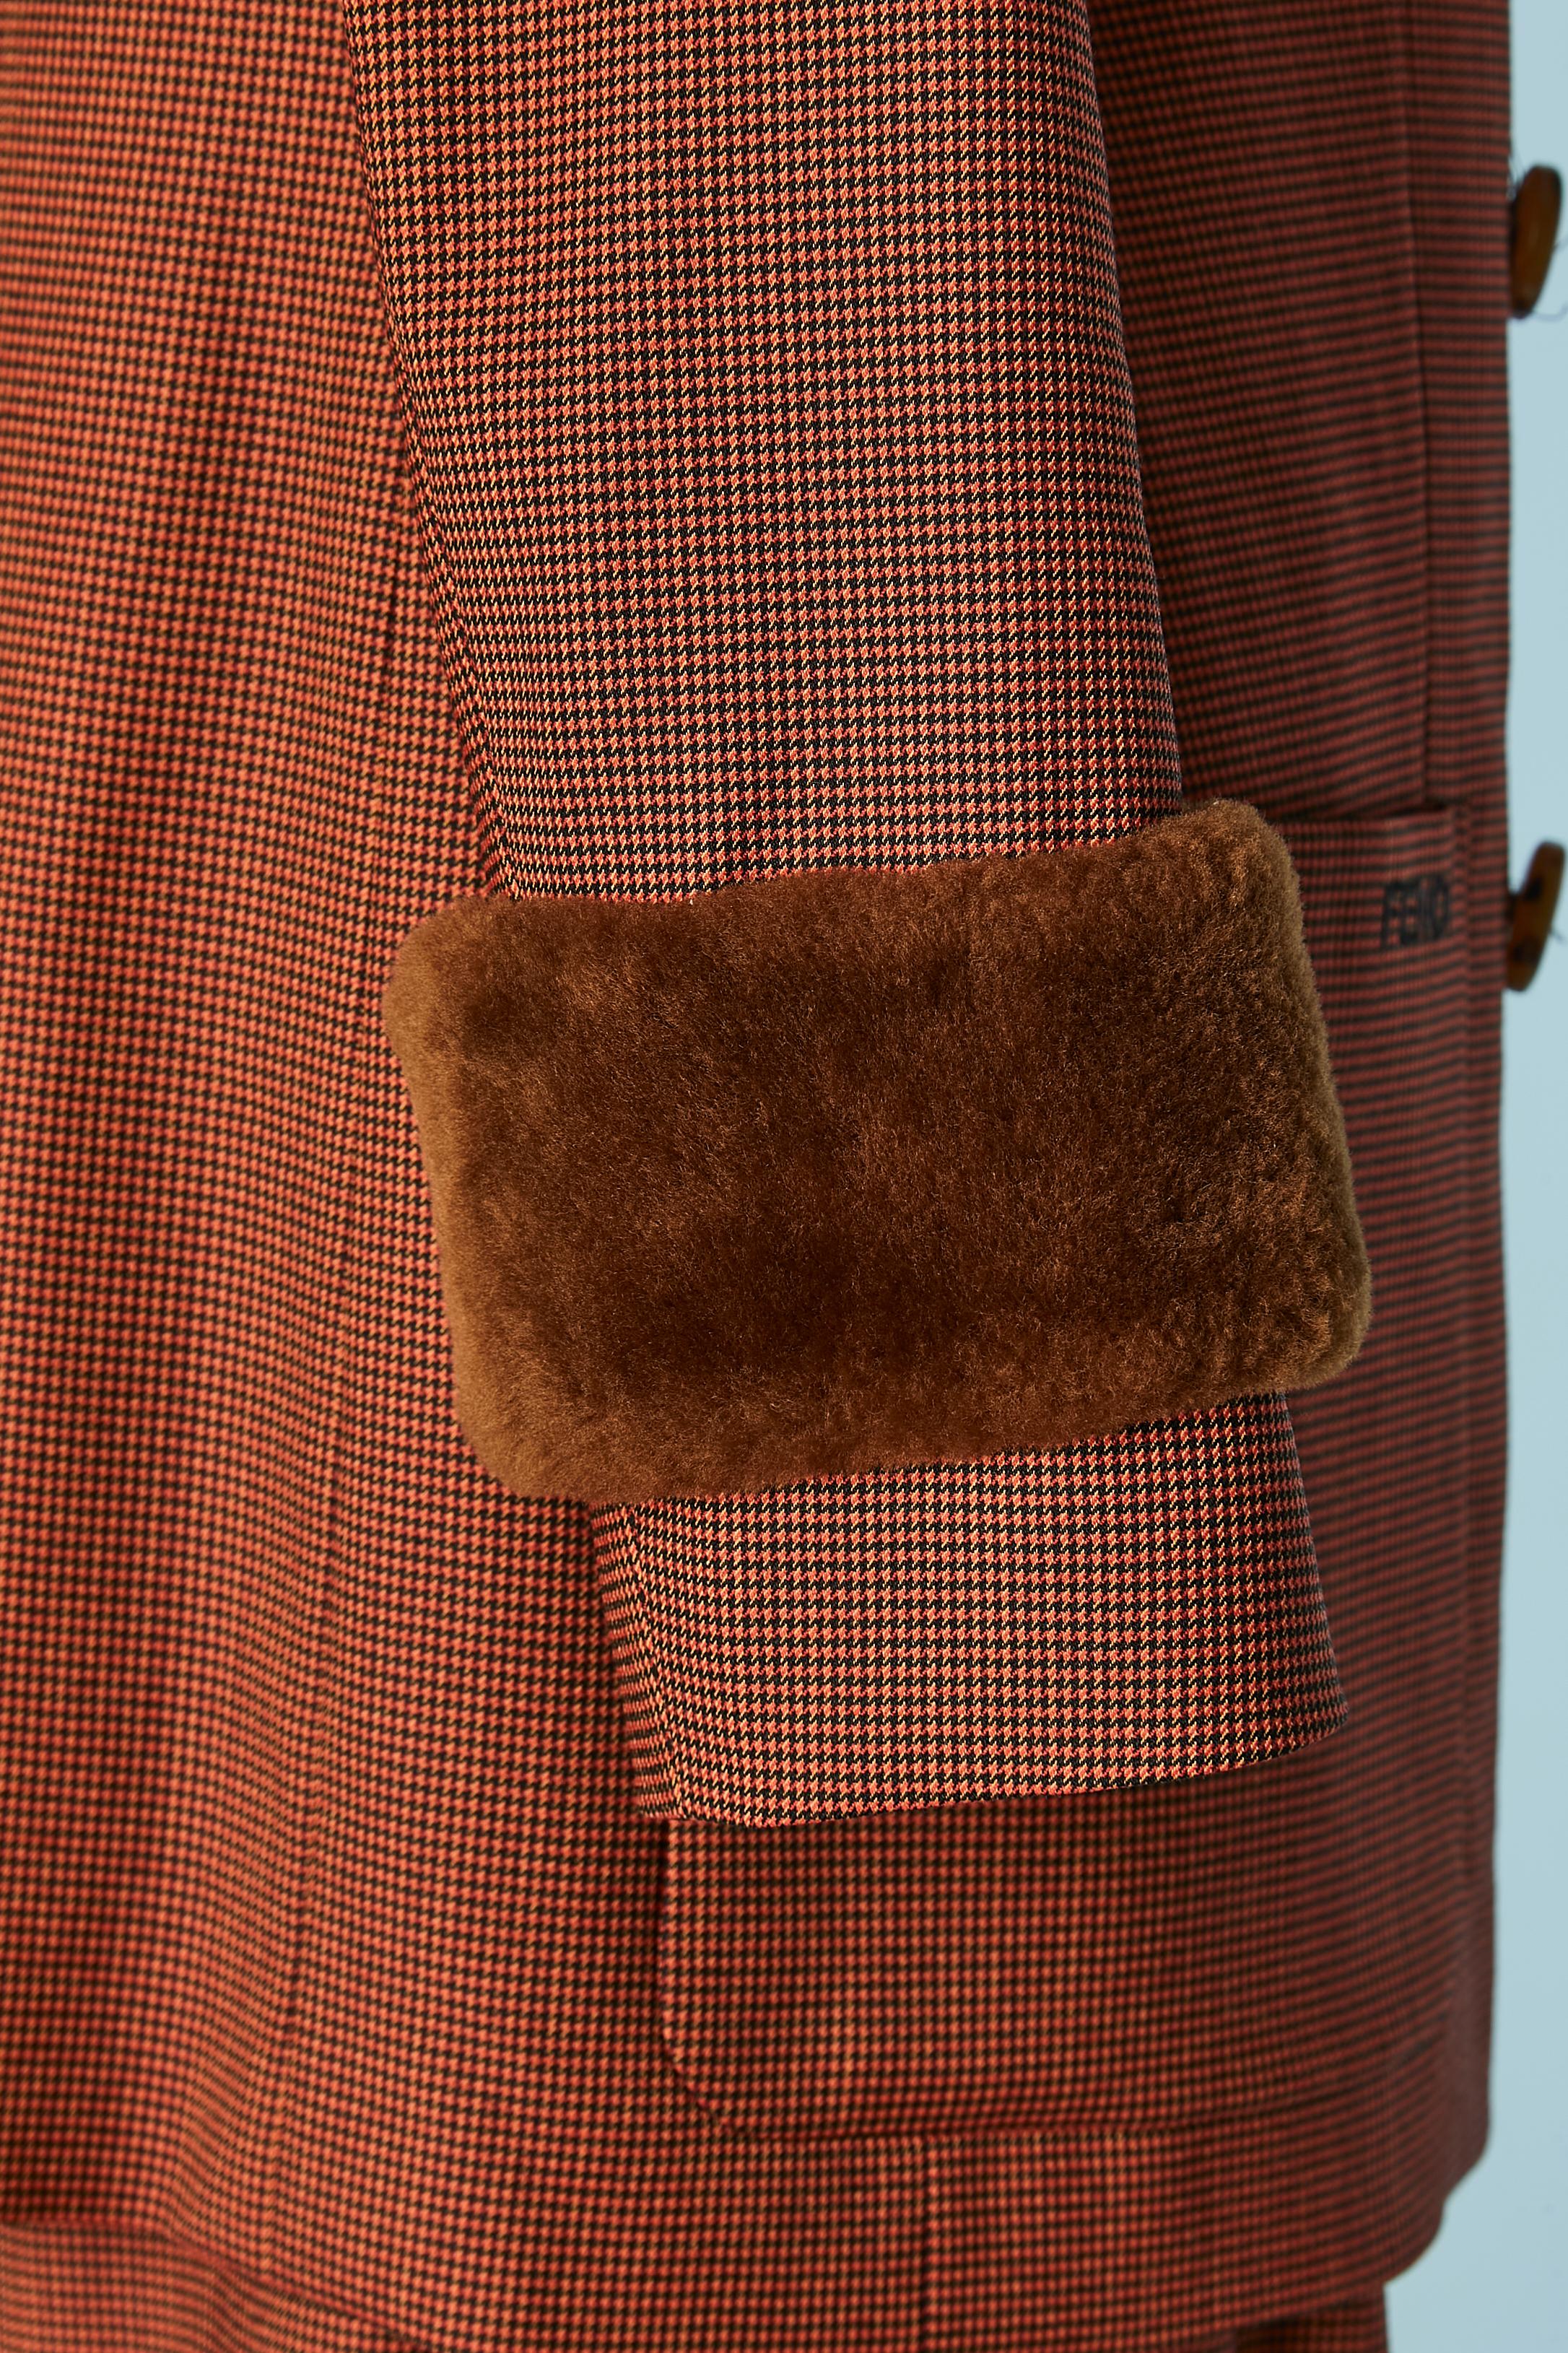 Brown and black mini Pied de poule pattern trouser-suit with fur cuffs FENDI  For Sale 1